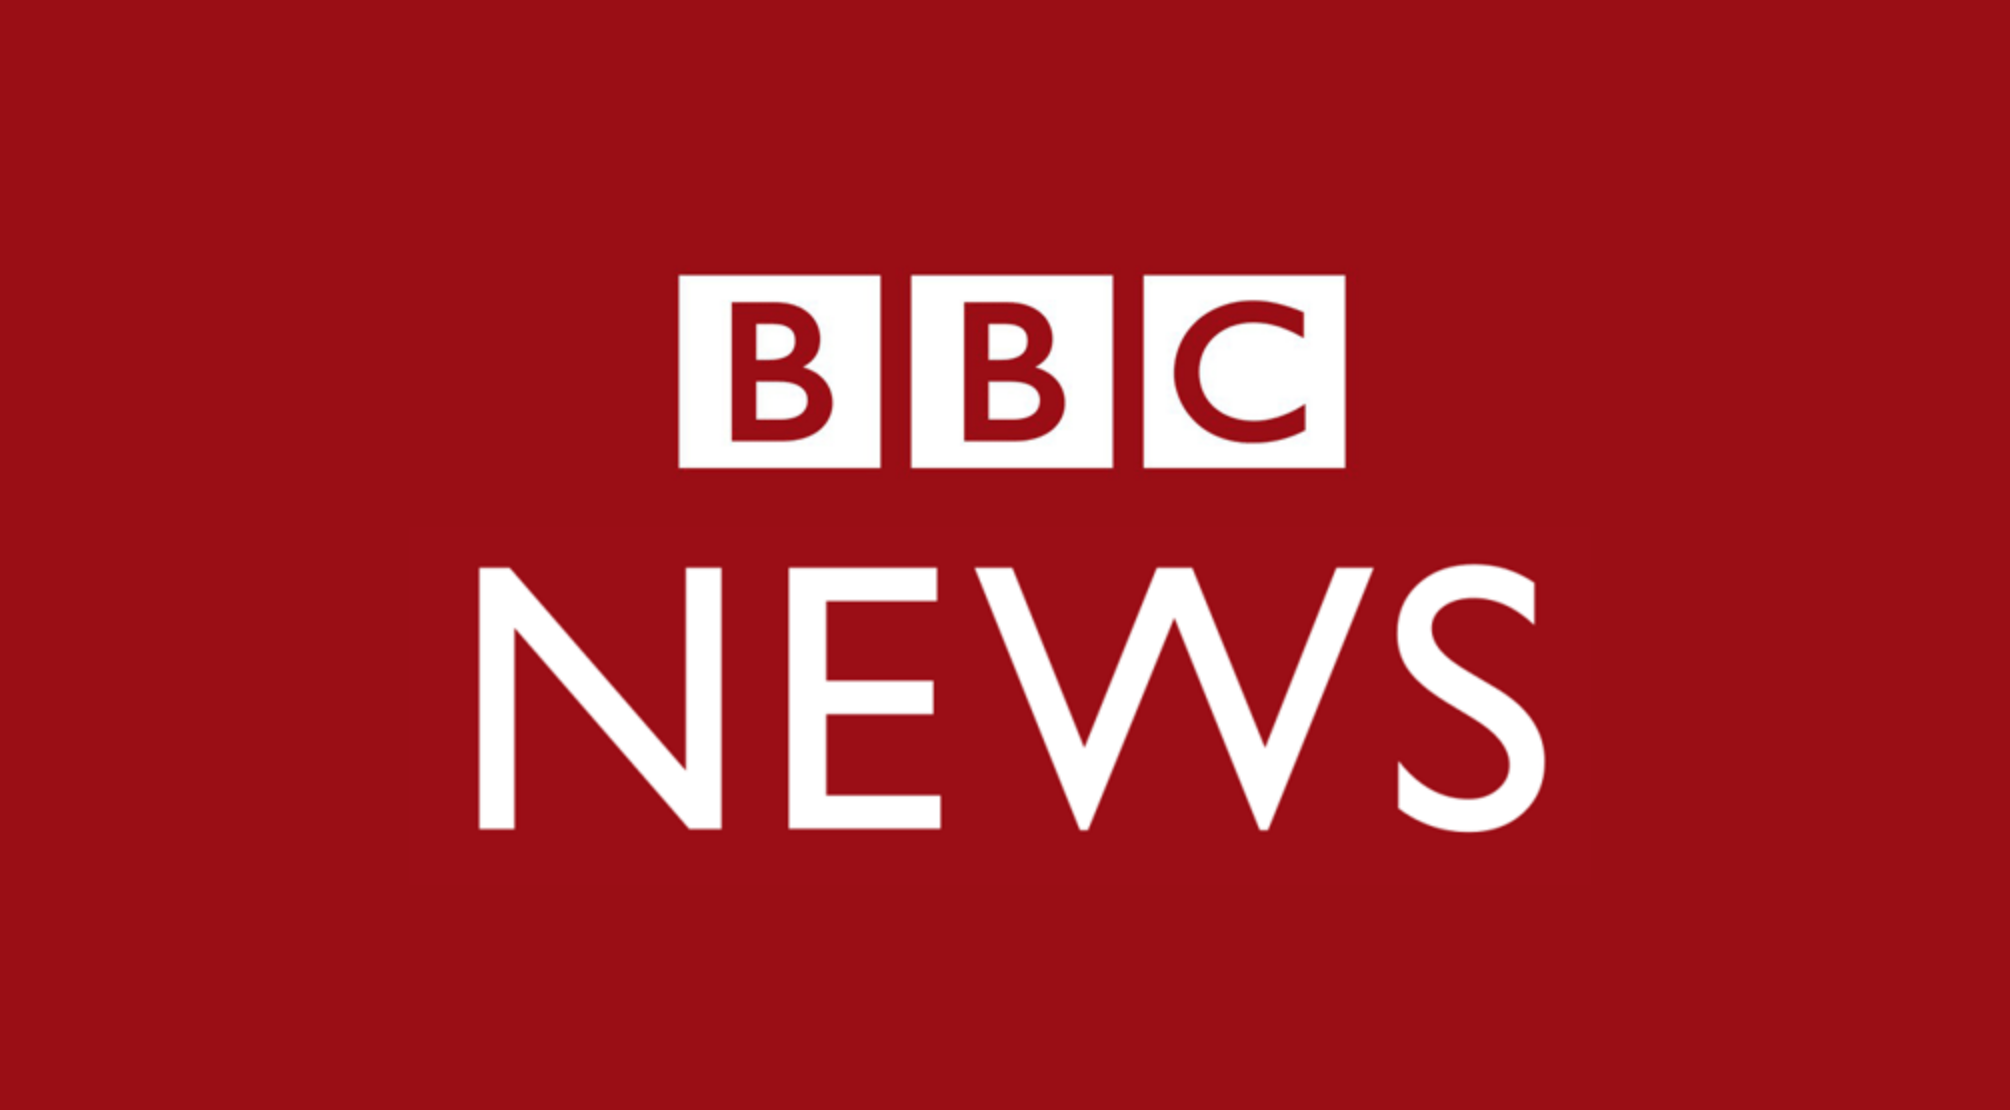 L’invito della BBC ad appellare il personale con i pronomi transgender 1